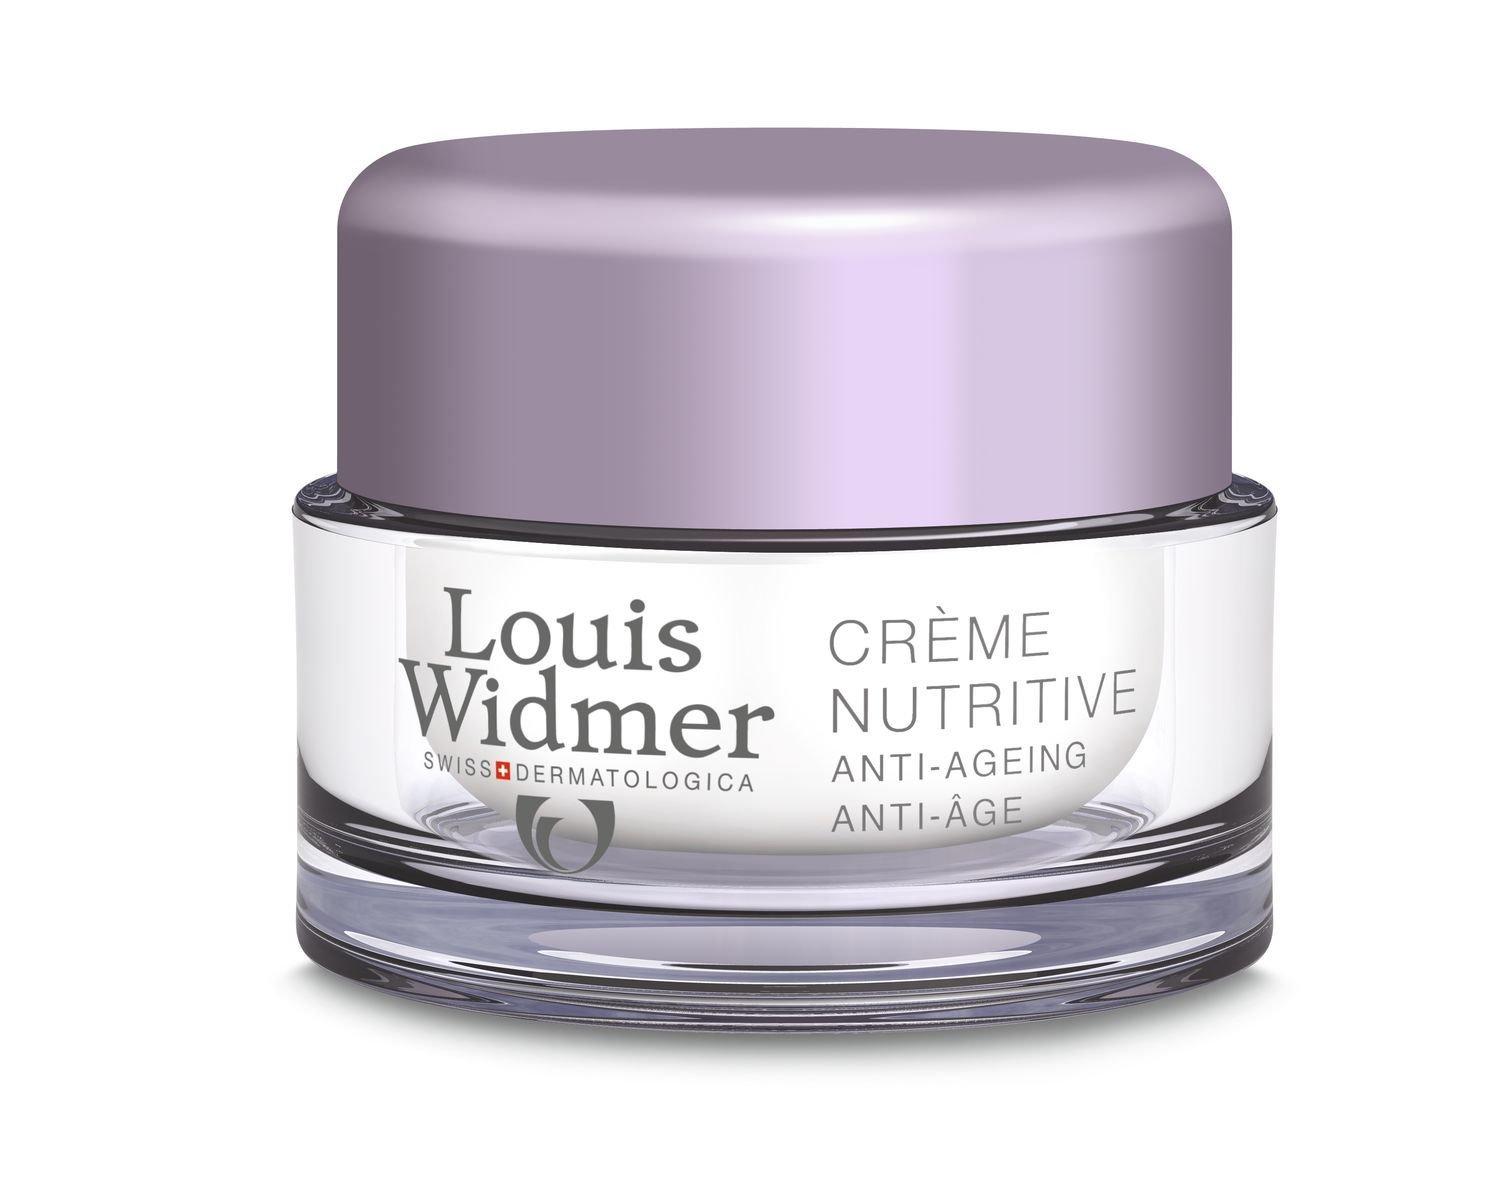 Louis Widmer  Crème Nutritive parf Creme Nutritive parfumé 